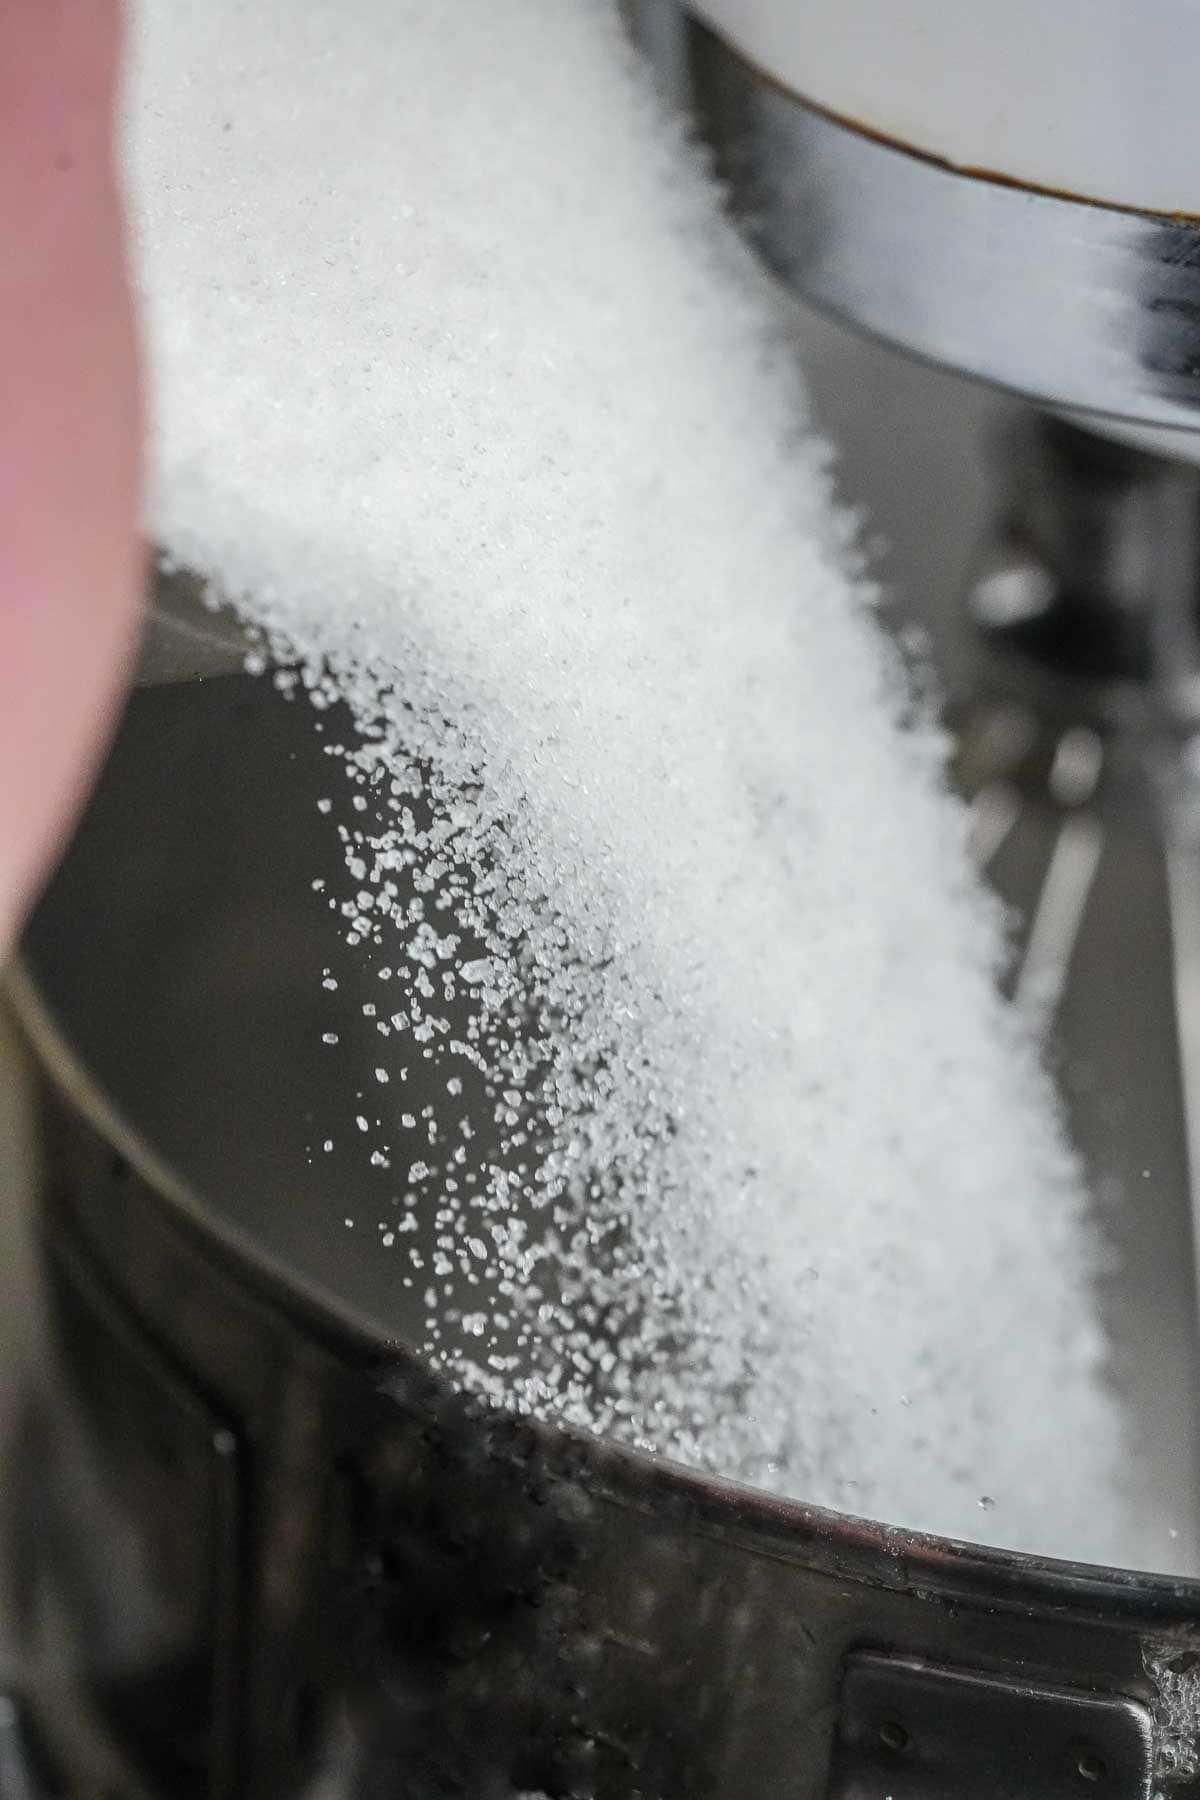 A person pouring sugar into a mixer.